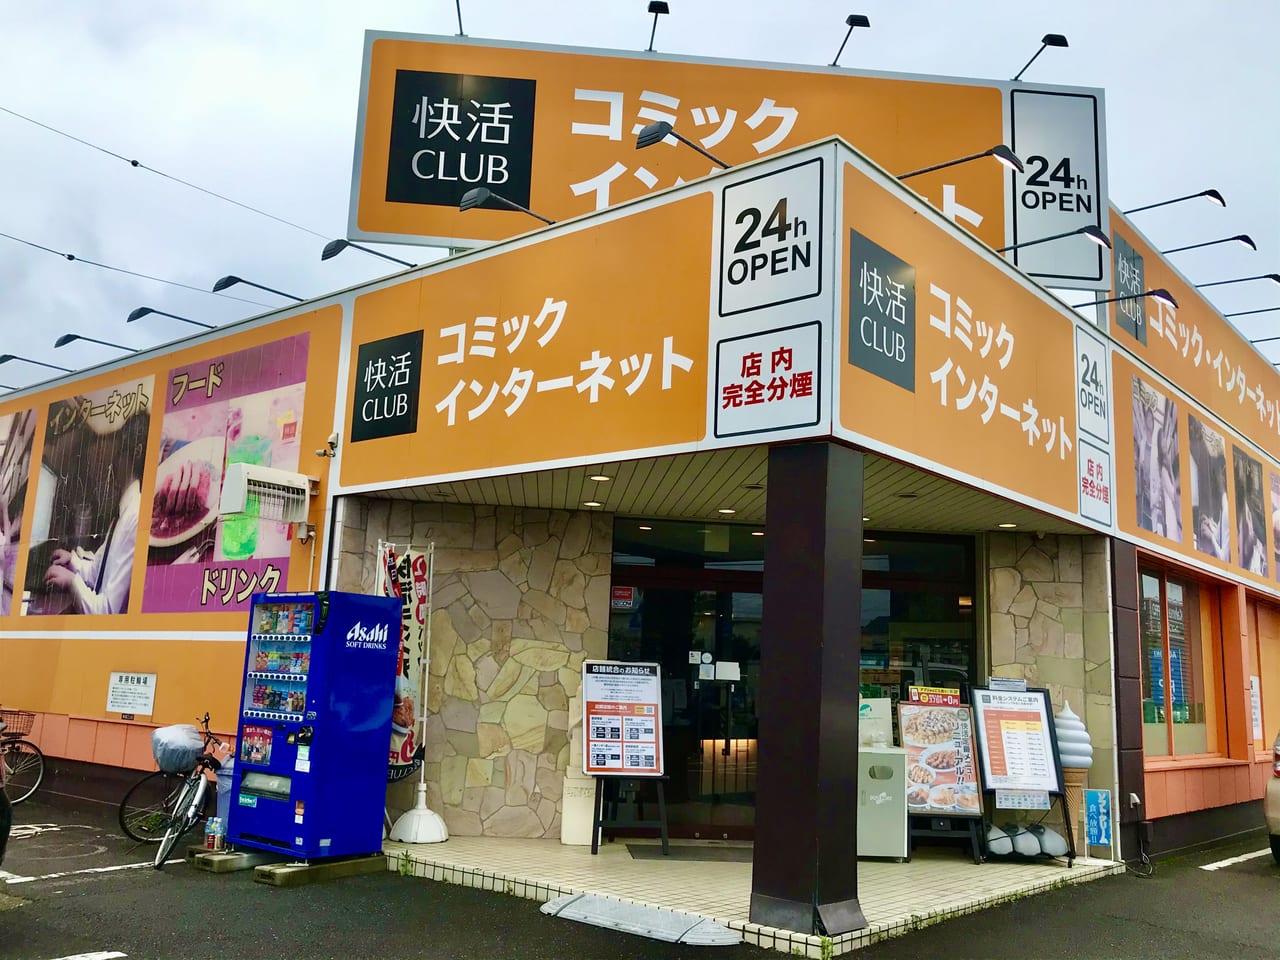 稲沢市 快活club稲沢店が5月31日で閉店 10月中旬には24時間営業のセルフトレーニングジム Fit24 に生まれ変わります 号外net 稲沢 市 清須市